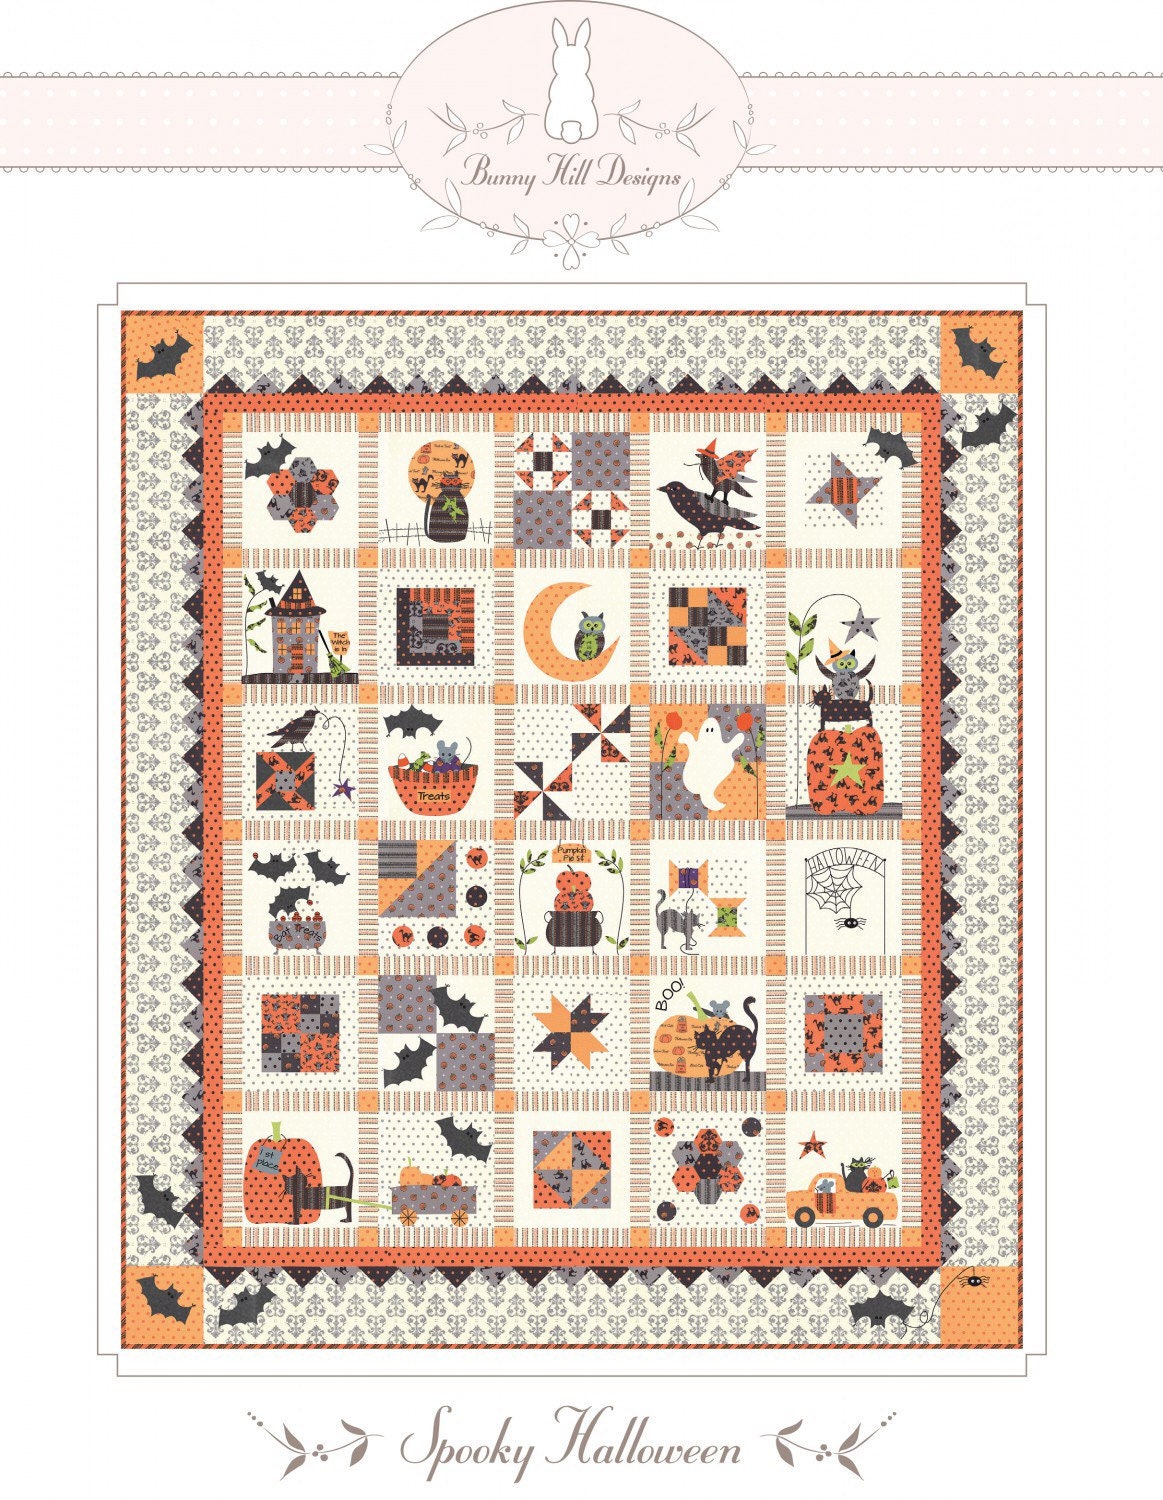 Spooky Halloween Appliqué Quilt Pattern - Bunny Hill Designs - Halloween Quilt Pattern